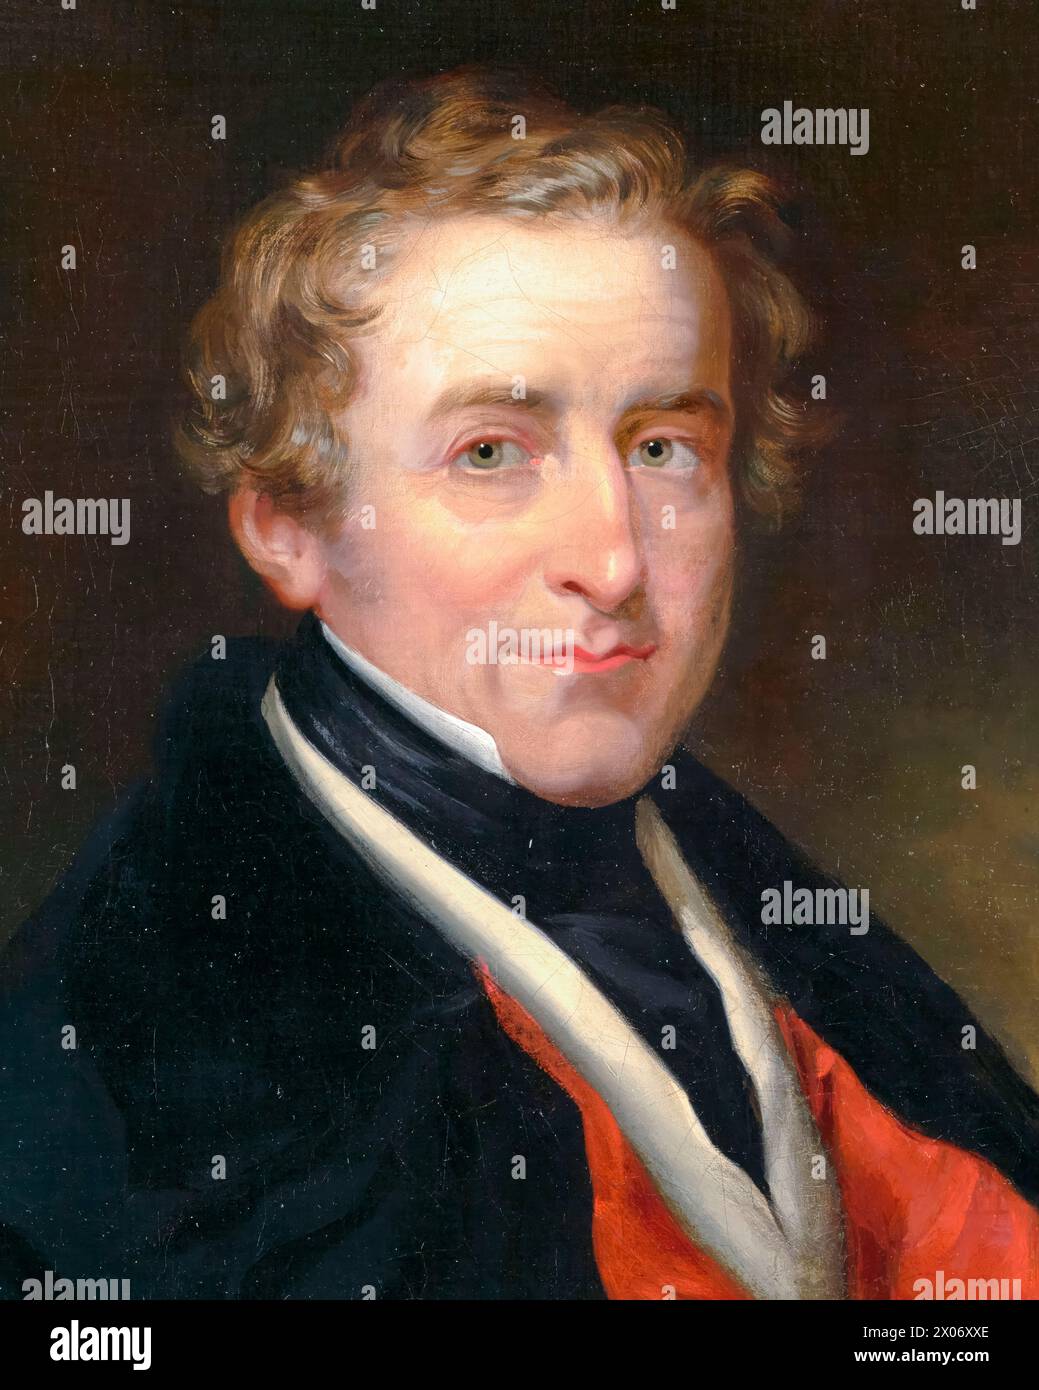 Sir Robert Peel (1788-1850), II baronetto, due volte primo ministro del Regno Unito 1834-1835 e 1841-1846, ritratto a olio su tela di Robert Richard Scanlan, 1838-1850 Foto Stock